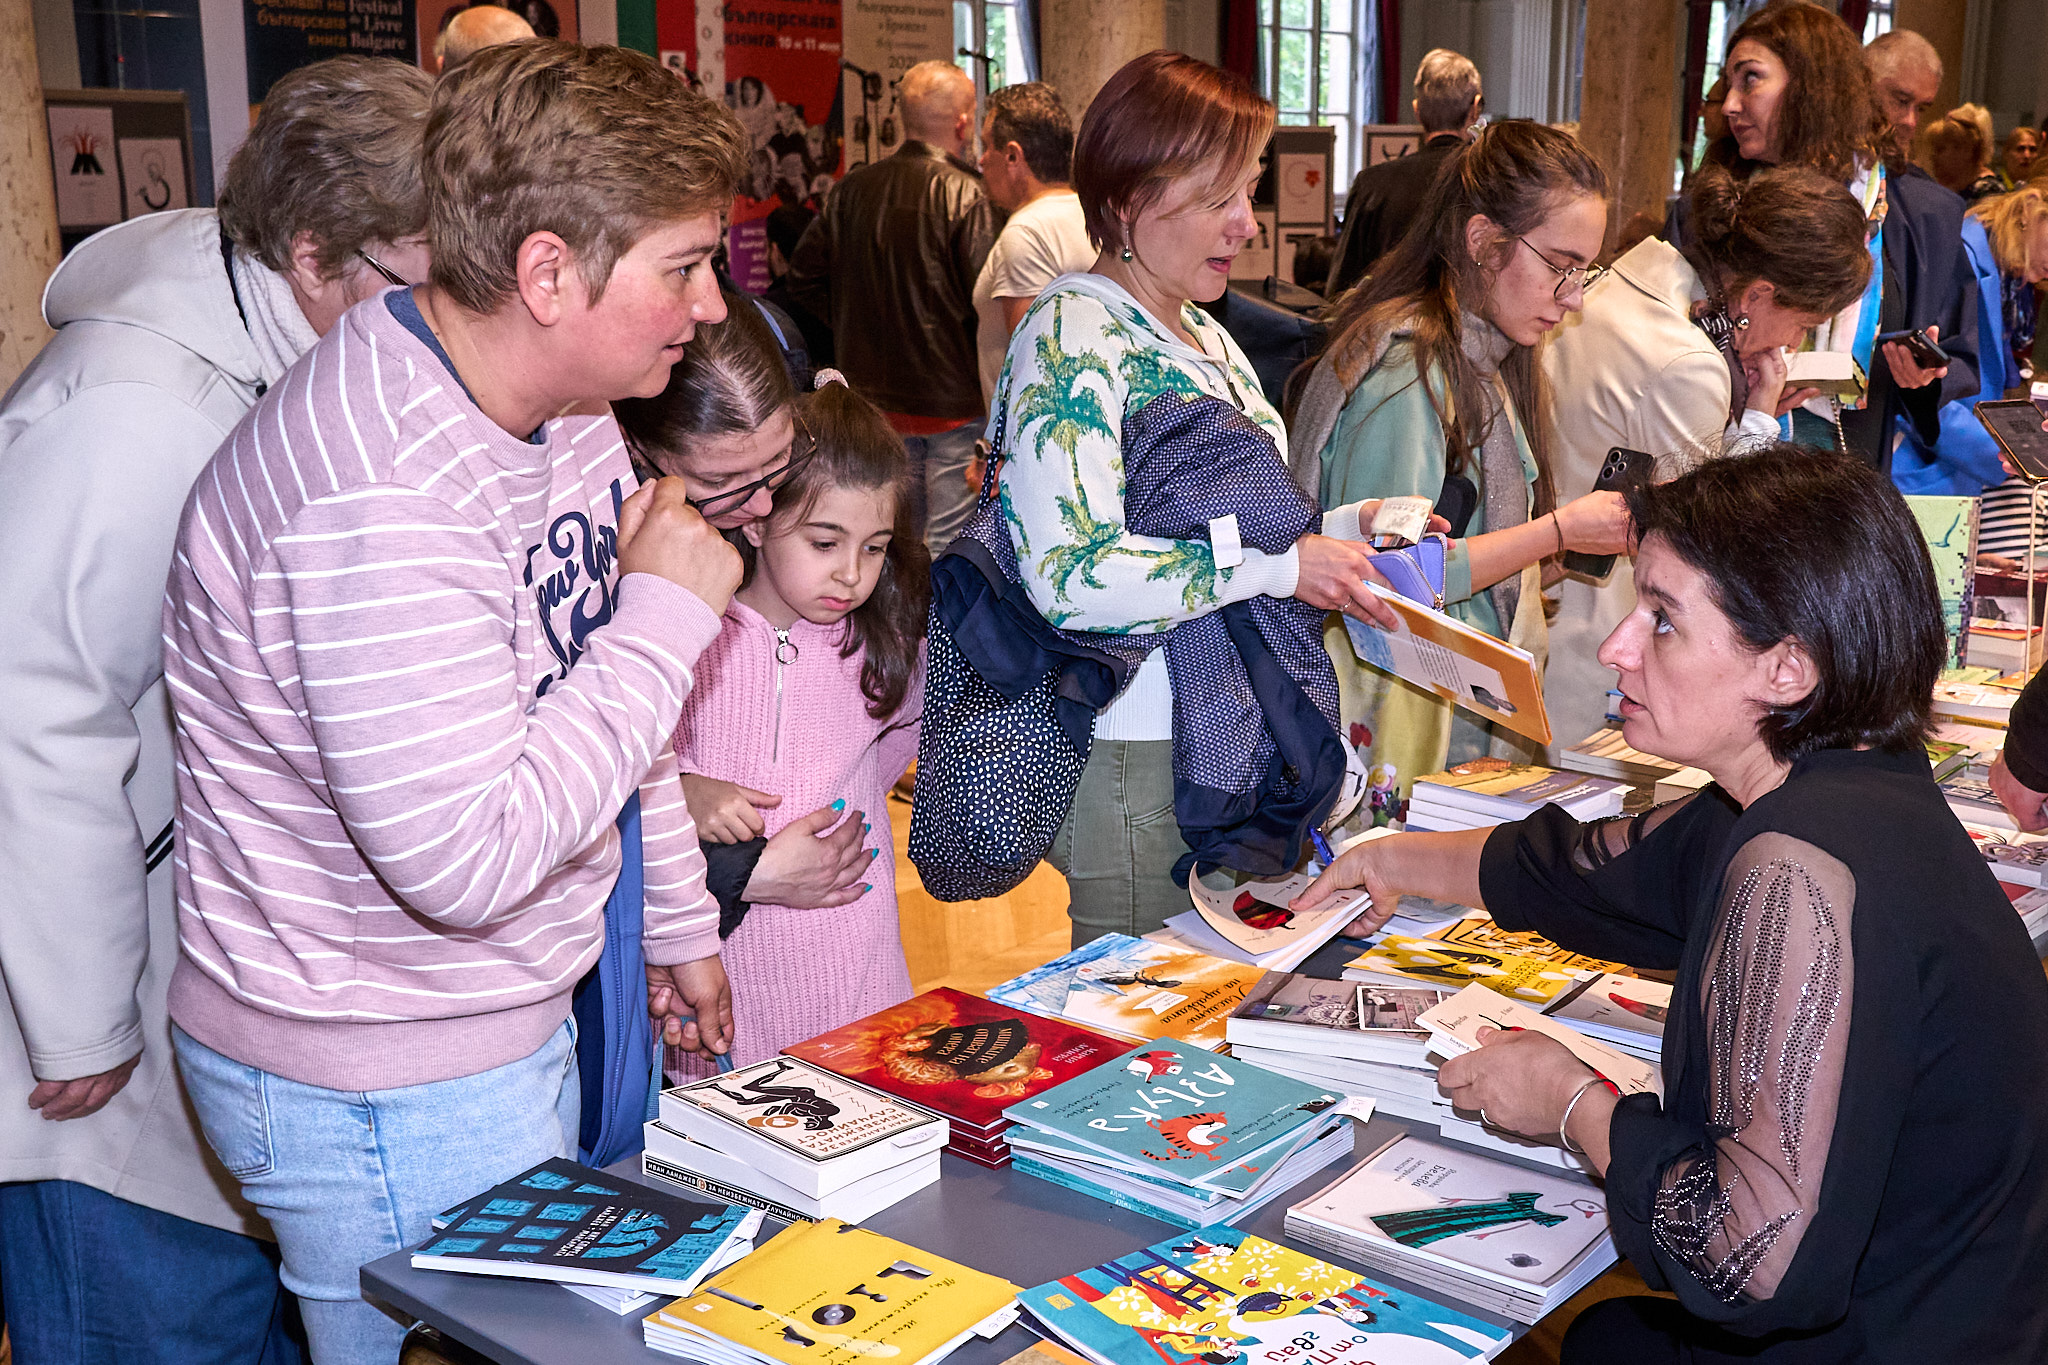 В Брюксел се проведе Шести фестивал на българската книга